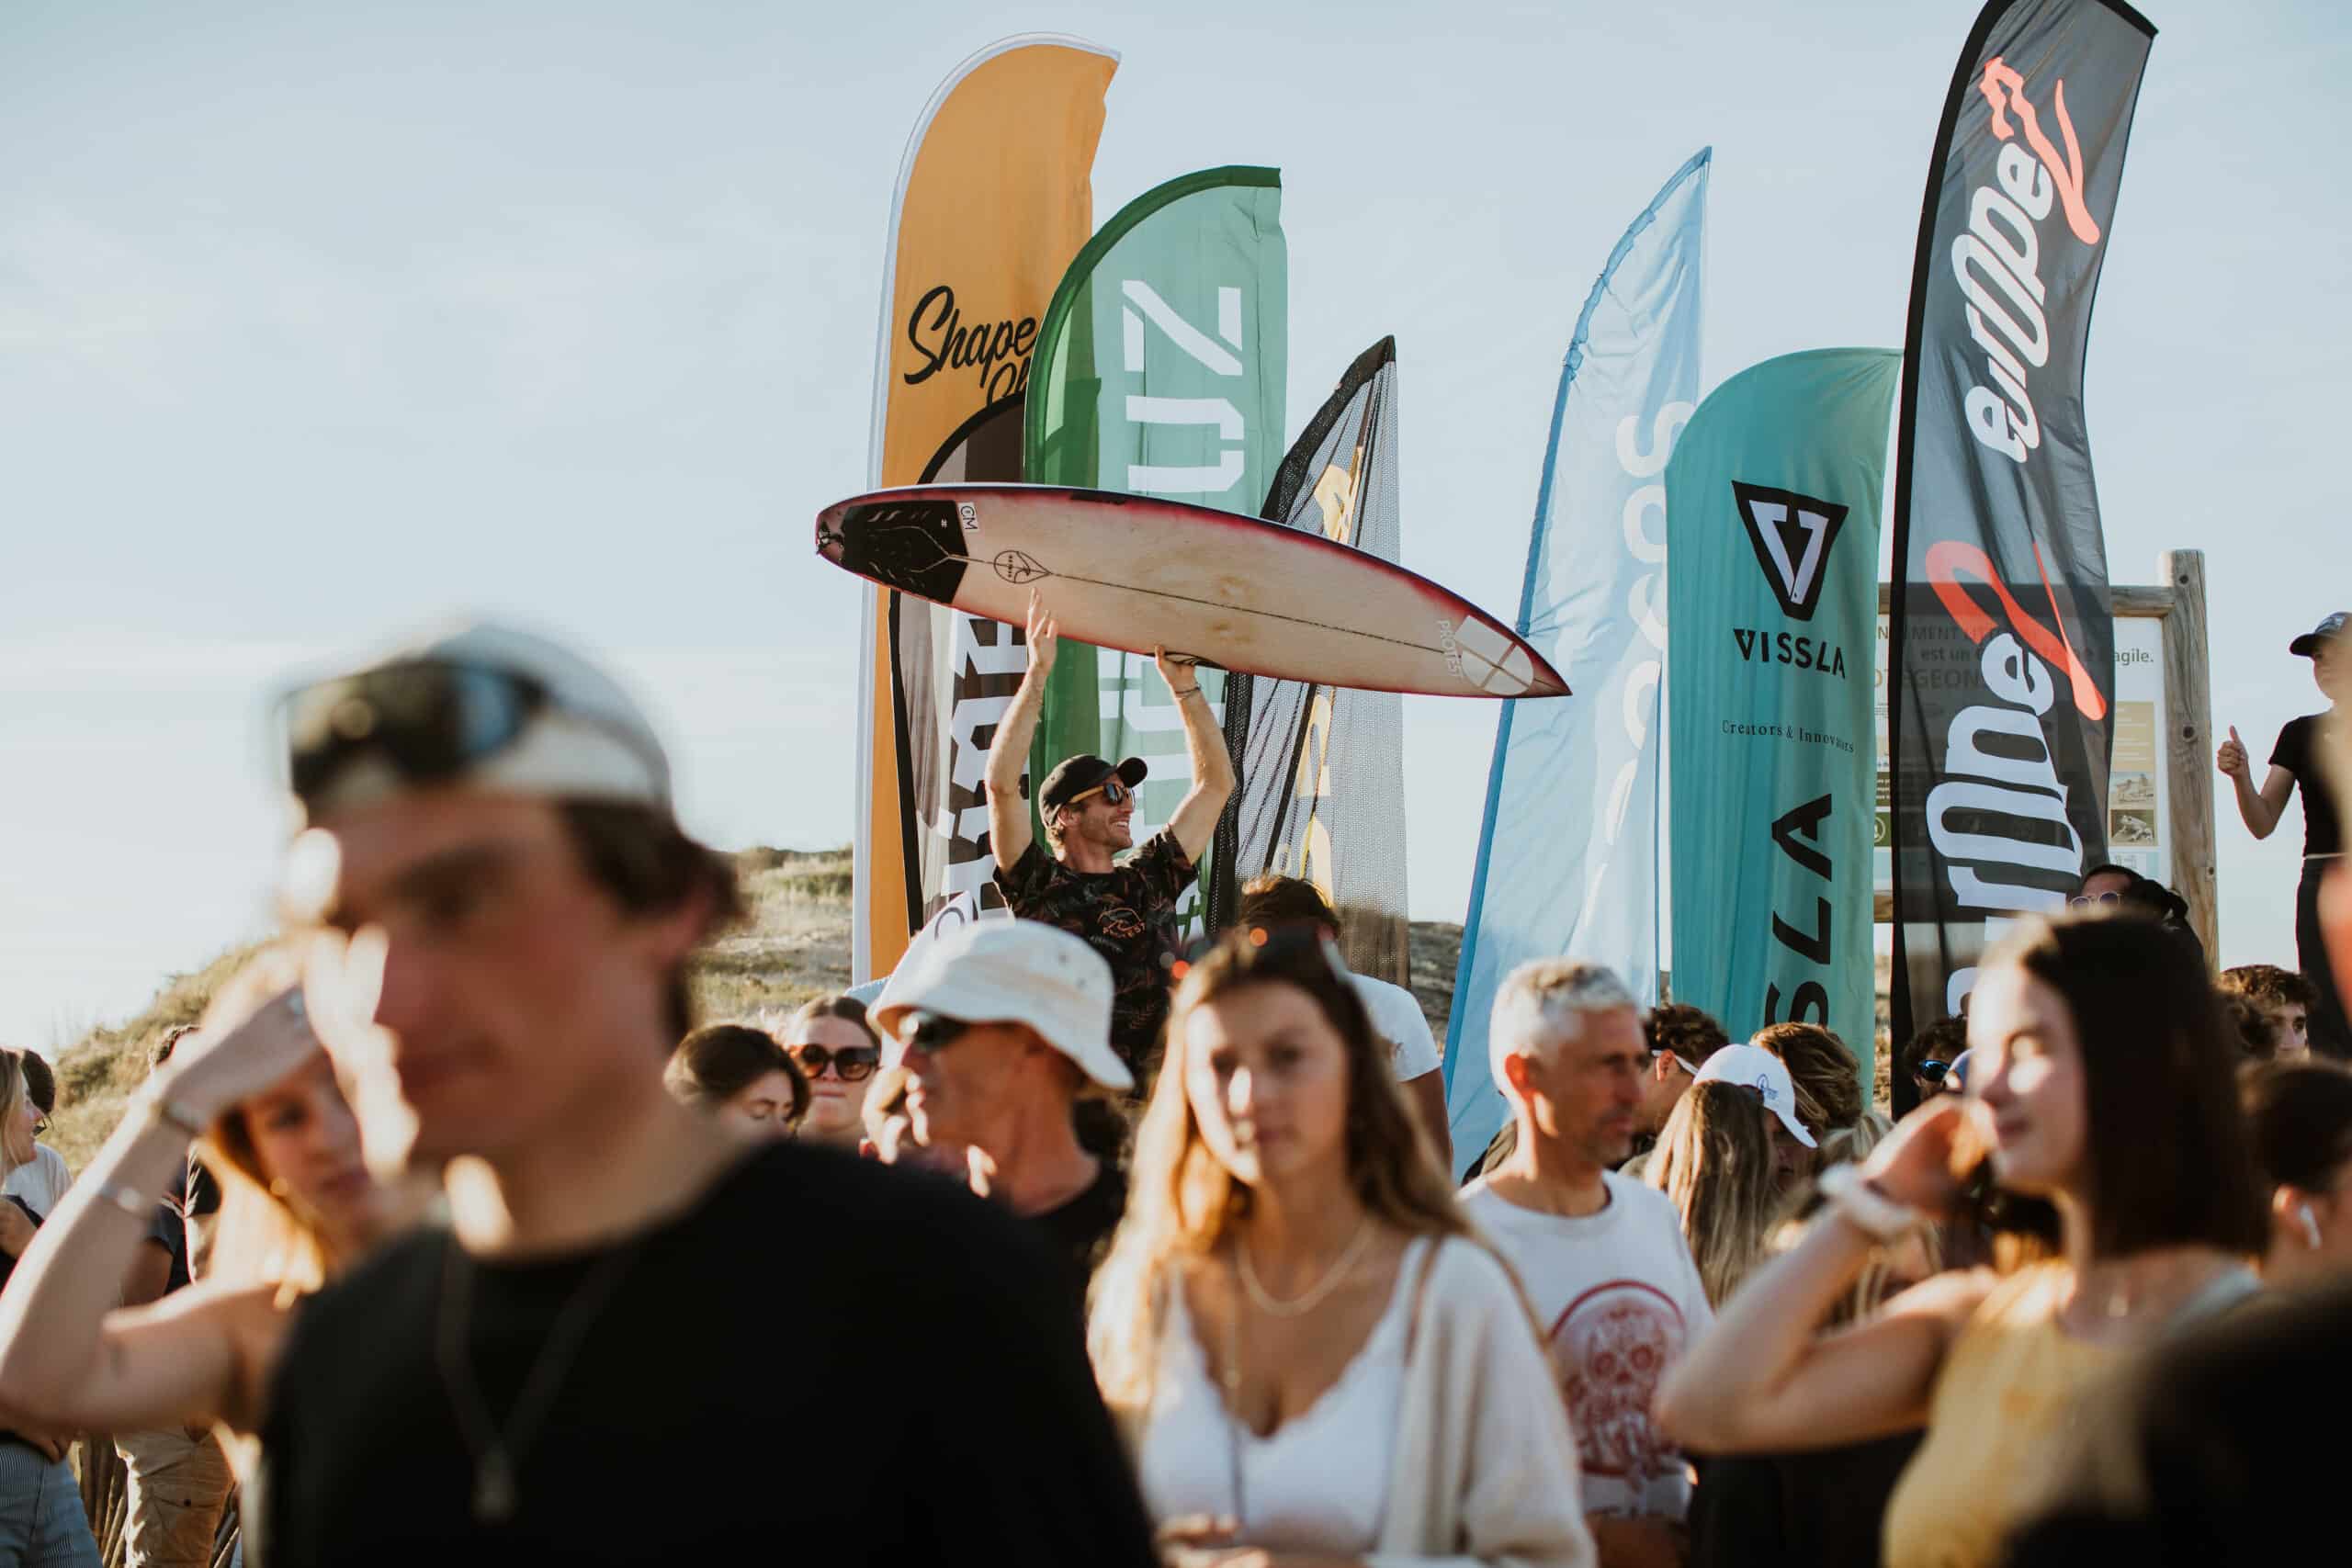 Shapers-Club- Un événement animé en plein air avec une foule de personnes, certaines portant des planches de surf, à proximité de plusieurs banderoles colorées avec des logos de marques sur une plage pour la Qualification Surf Olympique.
 -surfshop-surfboard